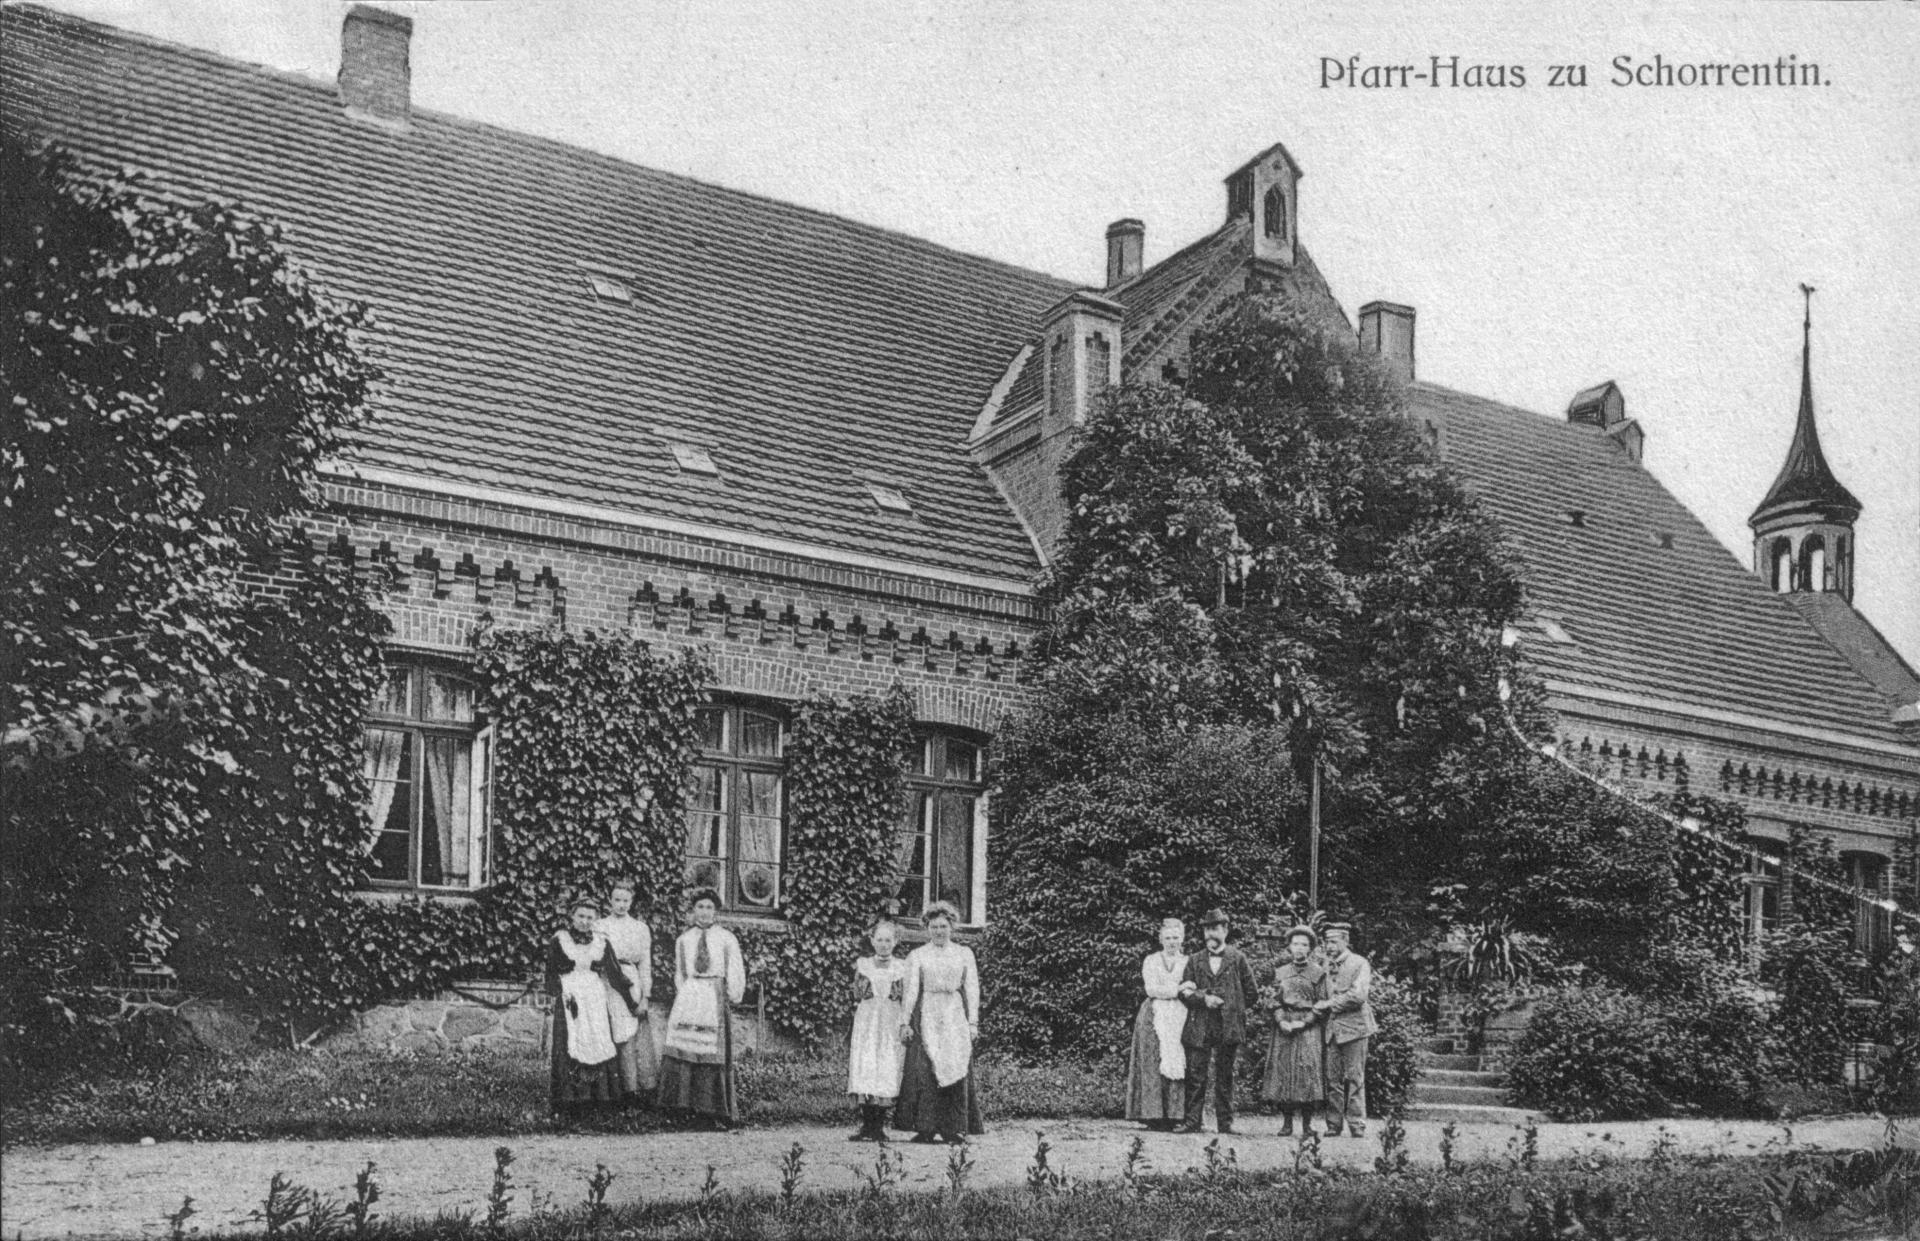 Ansichtskarte „Pfarr-Haus zu Schorrentin“ um 1913.